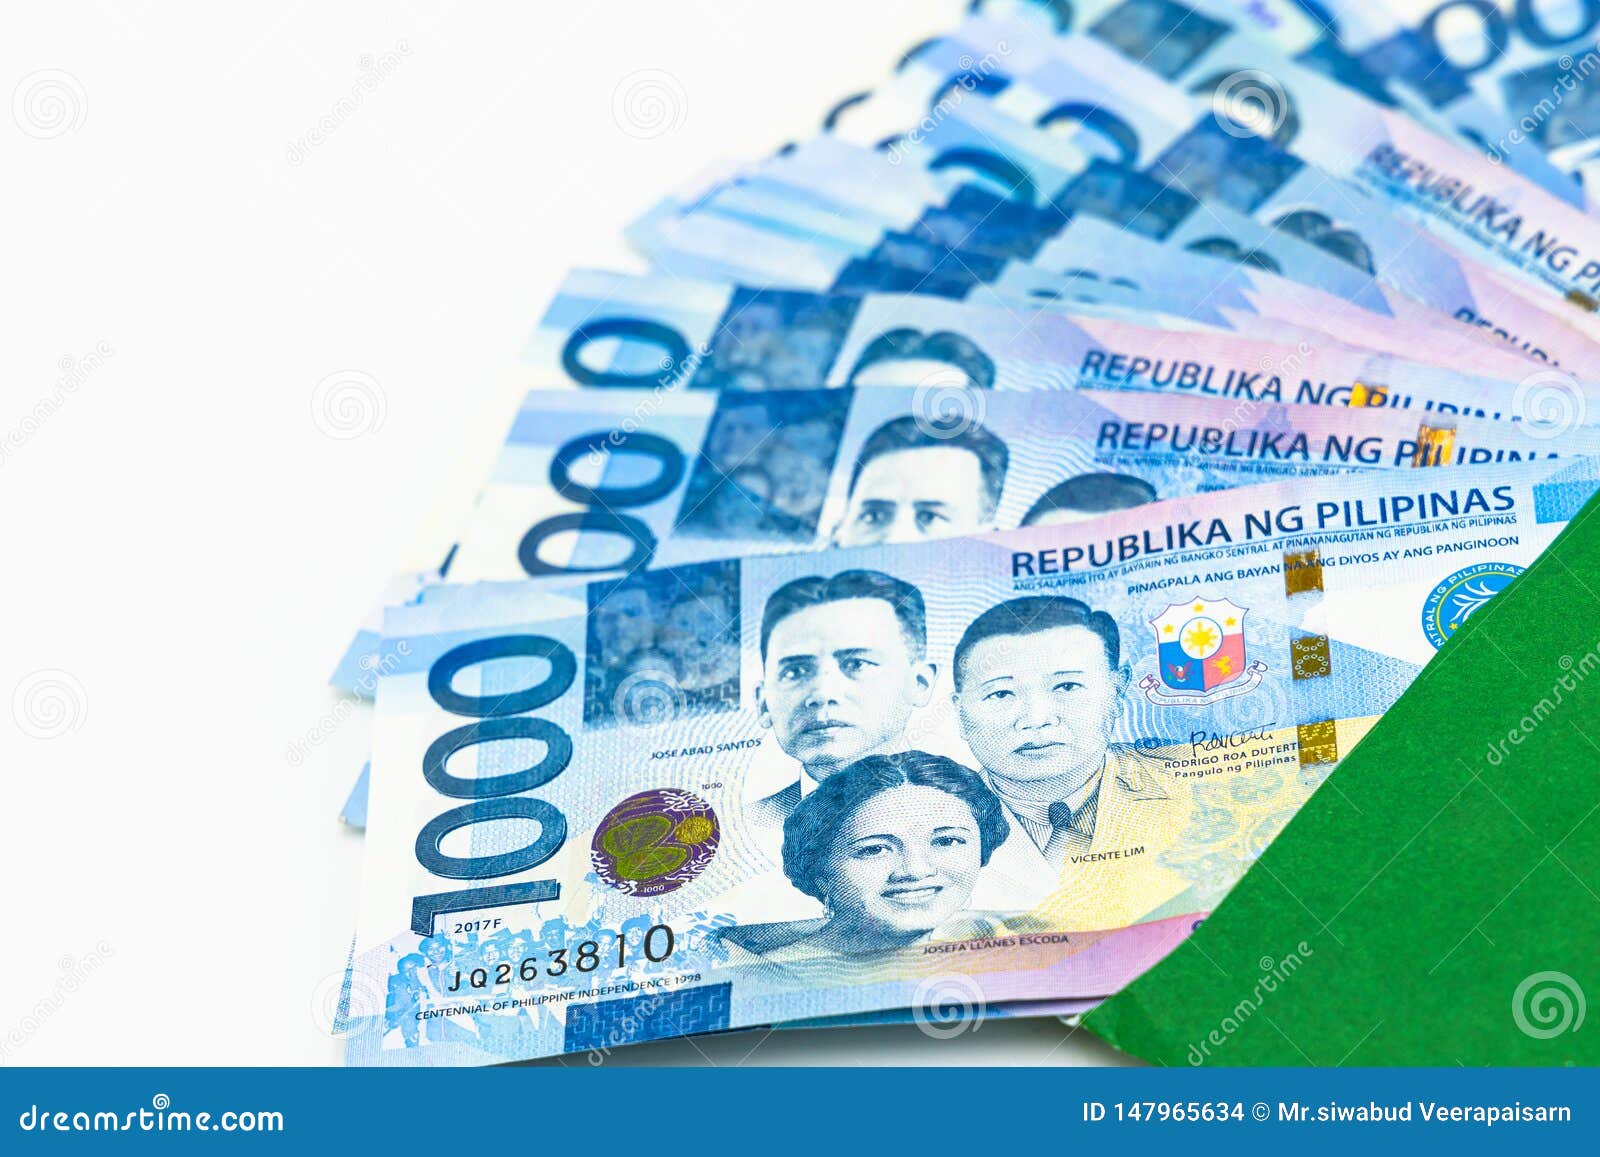 philippine 1000 peso bill, philippines money currency, philippine money bills background